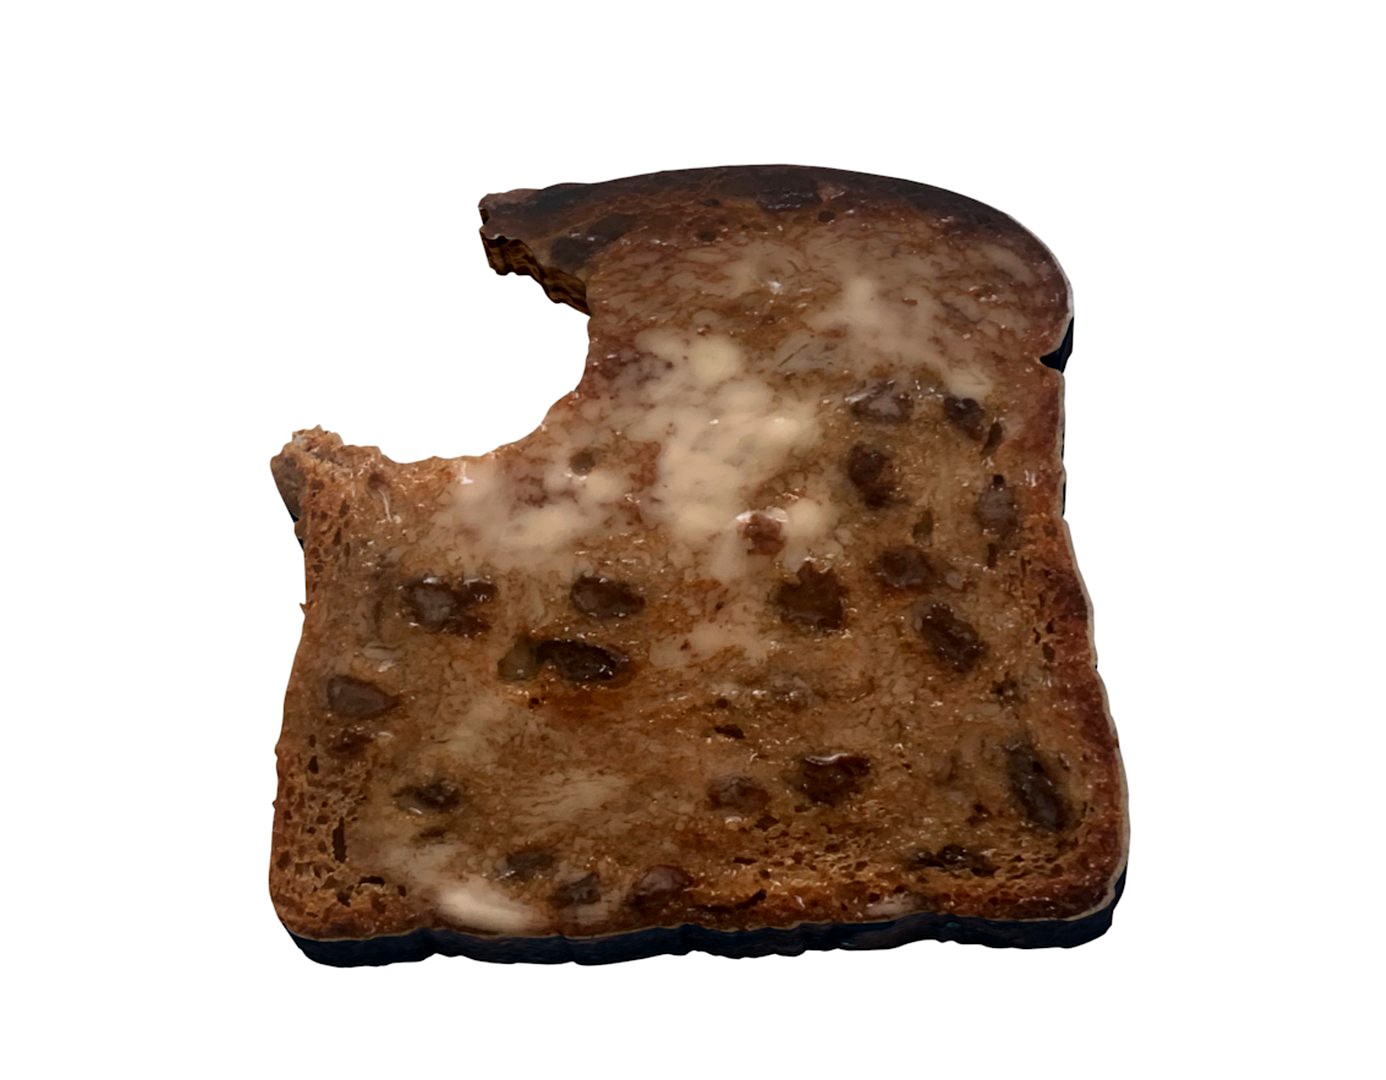 raisin bread